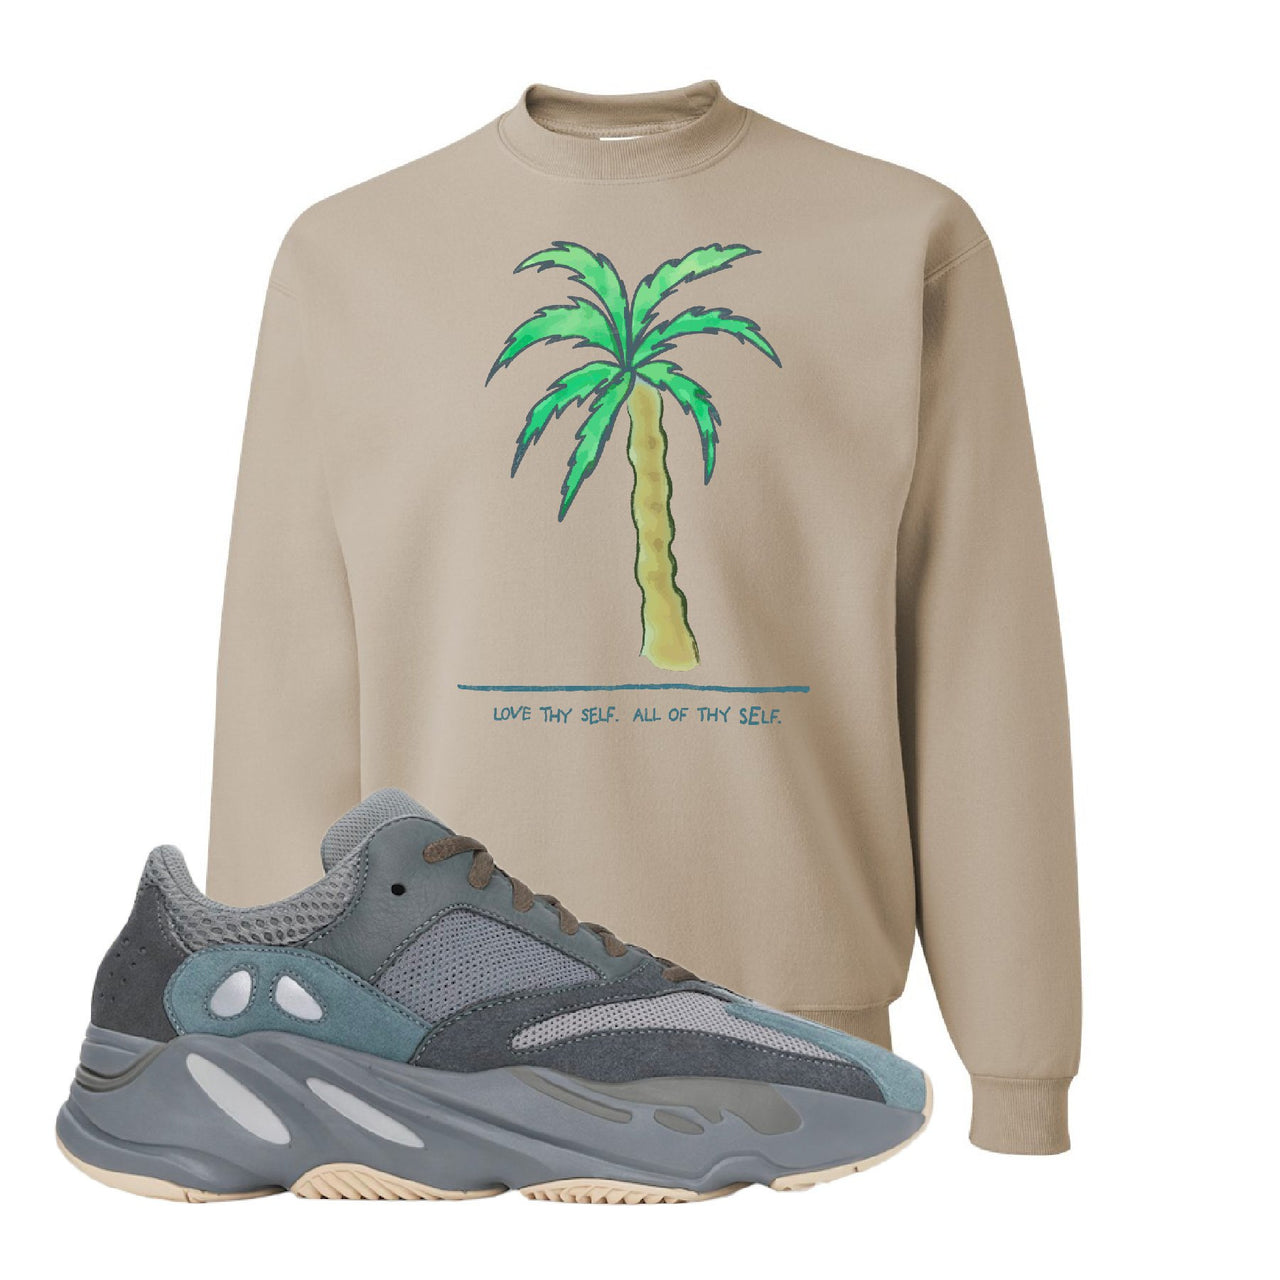 Yeezy Boost 700 Teal Blue Love Thyself Palm Sandstone Sneaker Hook Up Crewneck Sweatshirt